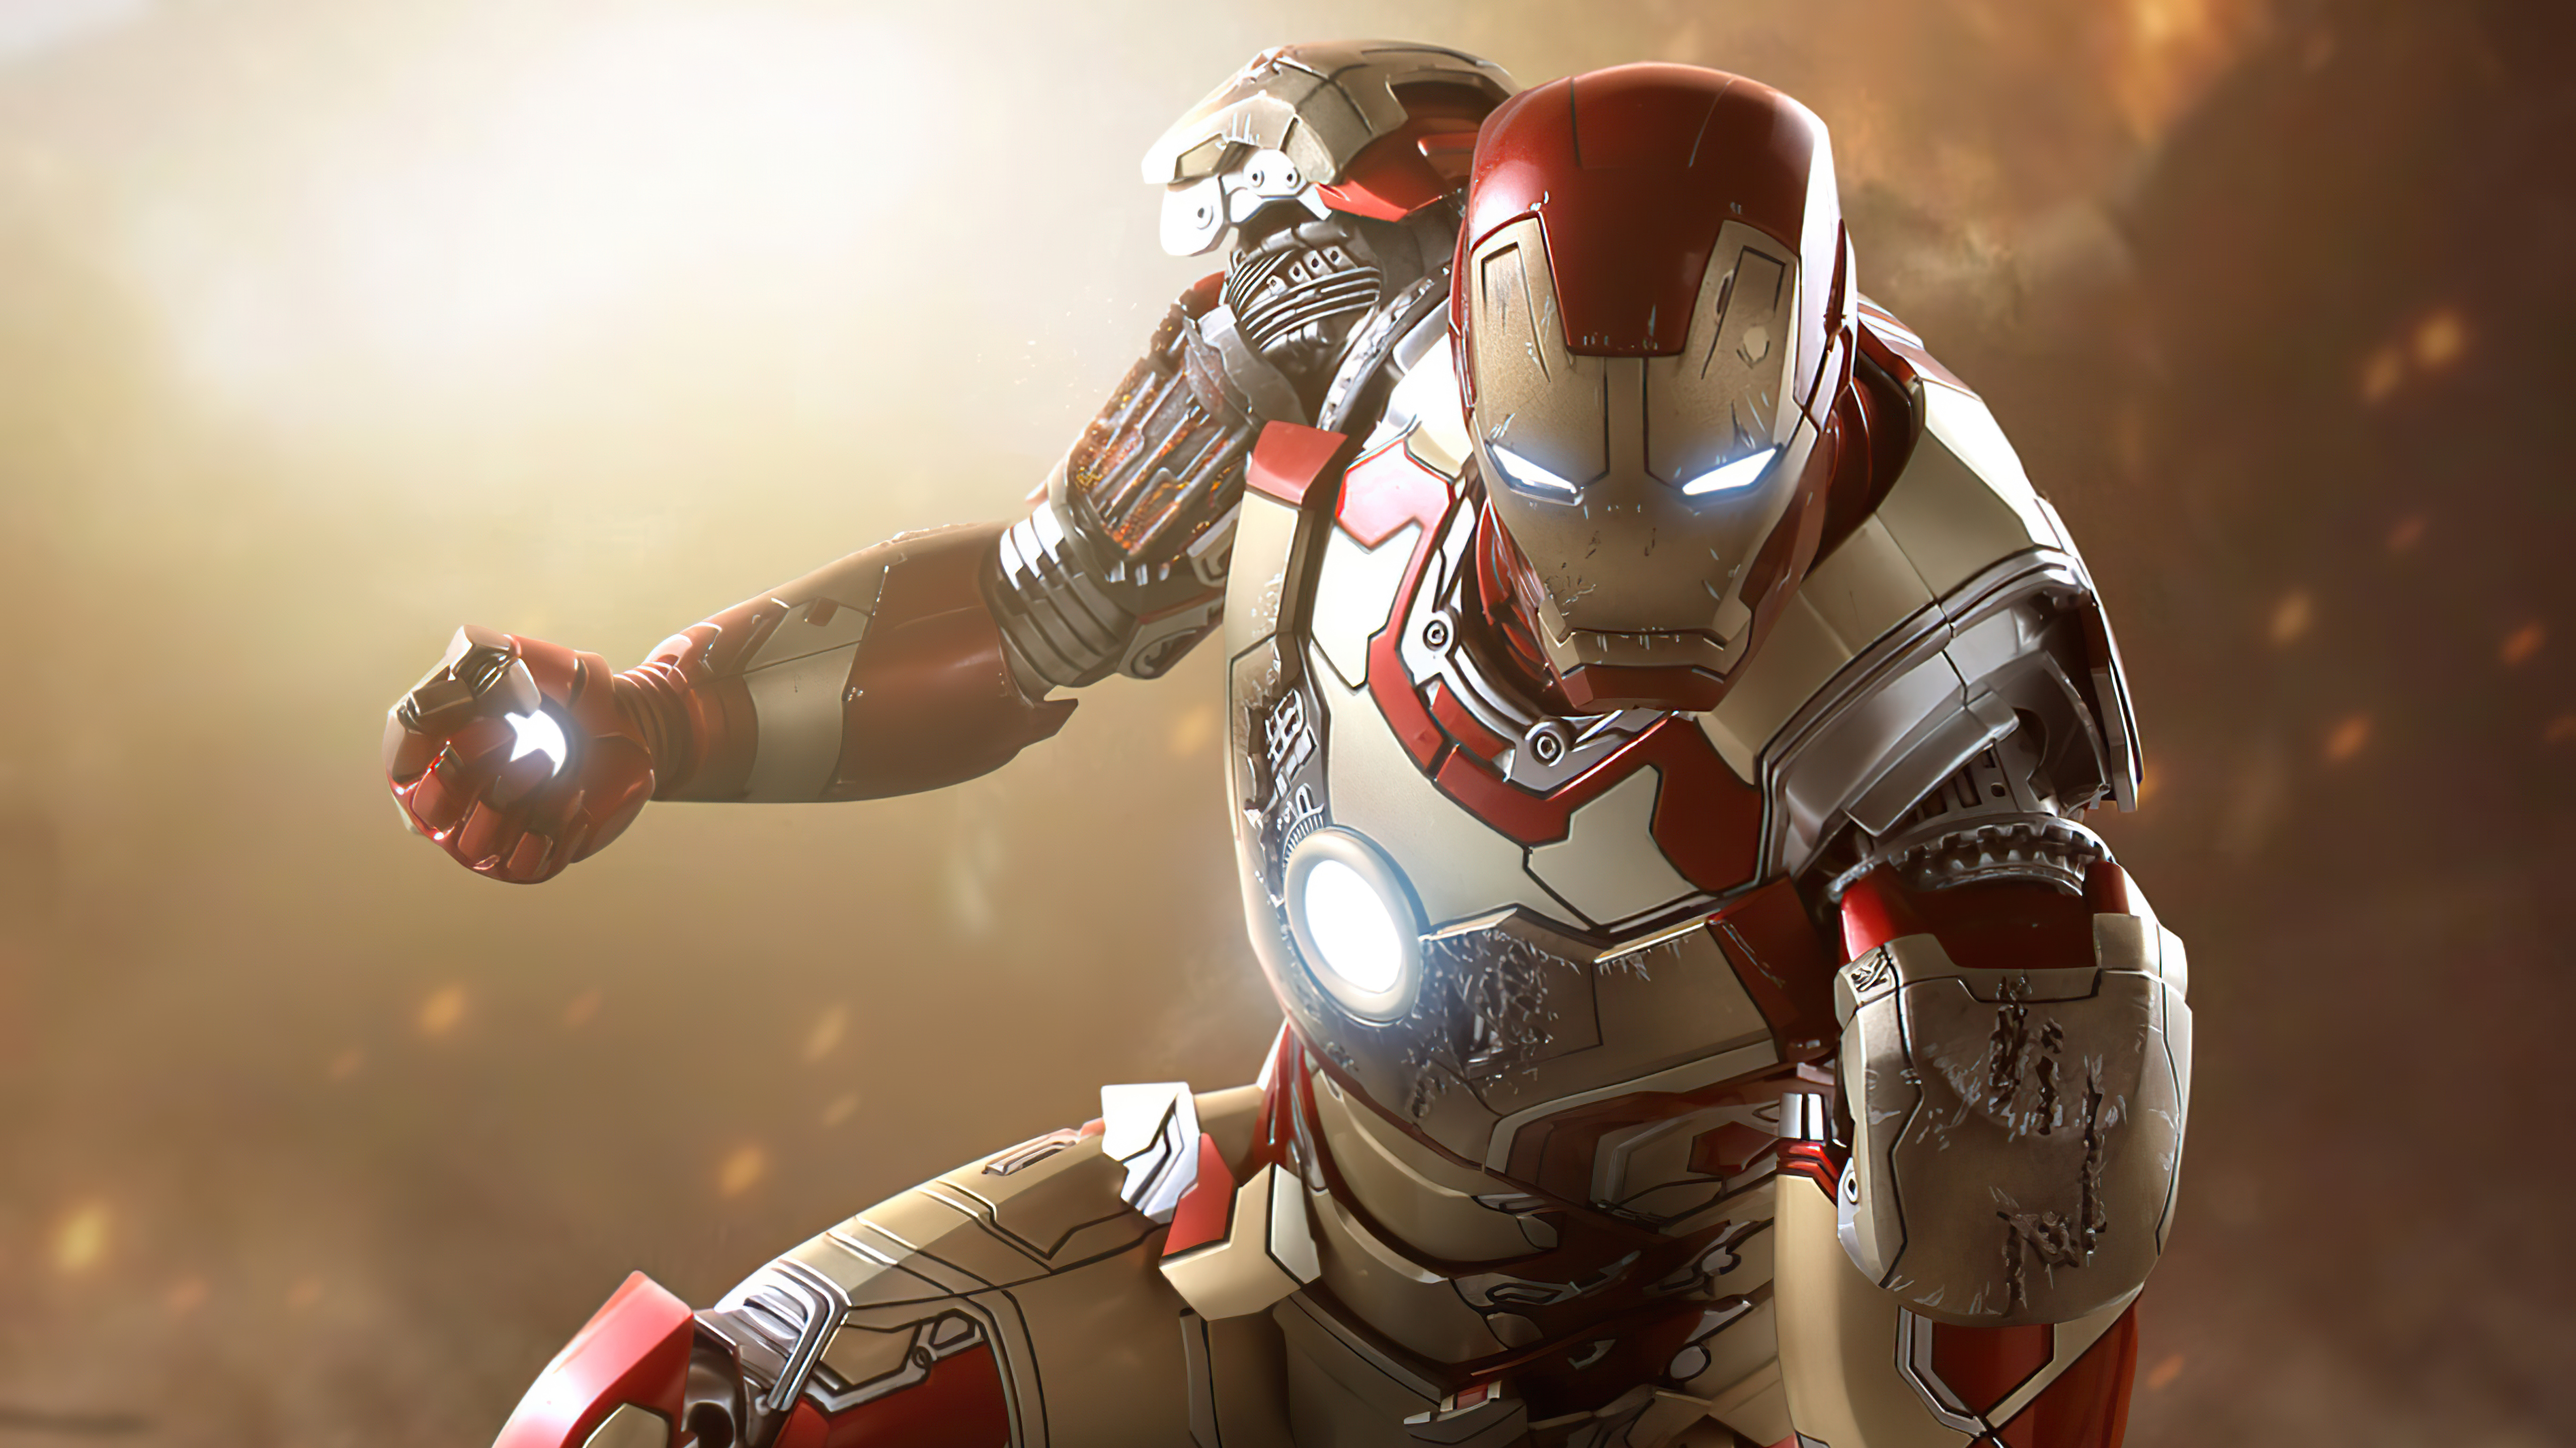 Miễn phí hình nền Iron Man độ phân giải cao và tuyệt đẹp để trang trí cho màn hình của bạn. Hãy tận hưởng sự mạnh mẽ và quyến rũ của Iron Man với hình ảnh đẹp nhất. Nhấn vào hình ảnh để tải xuống ngay lập tức.